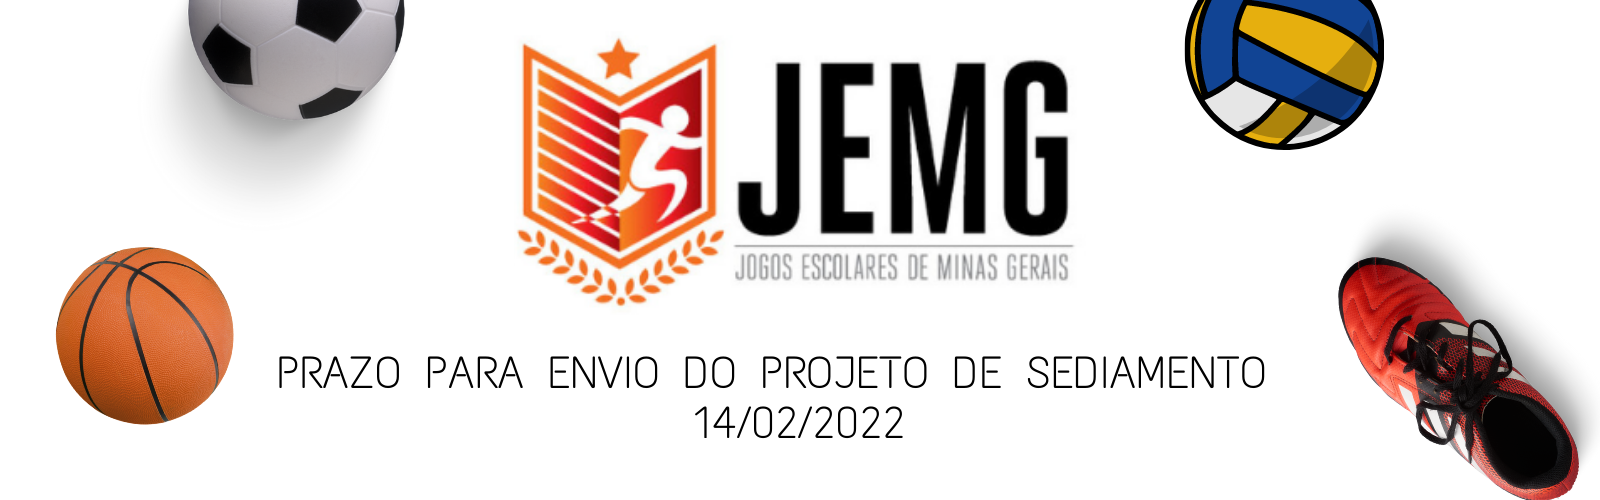 Estão abertas as inscrições para o - JEMG 2023